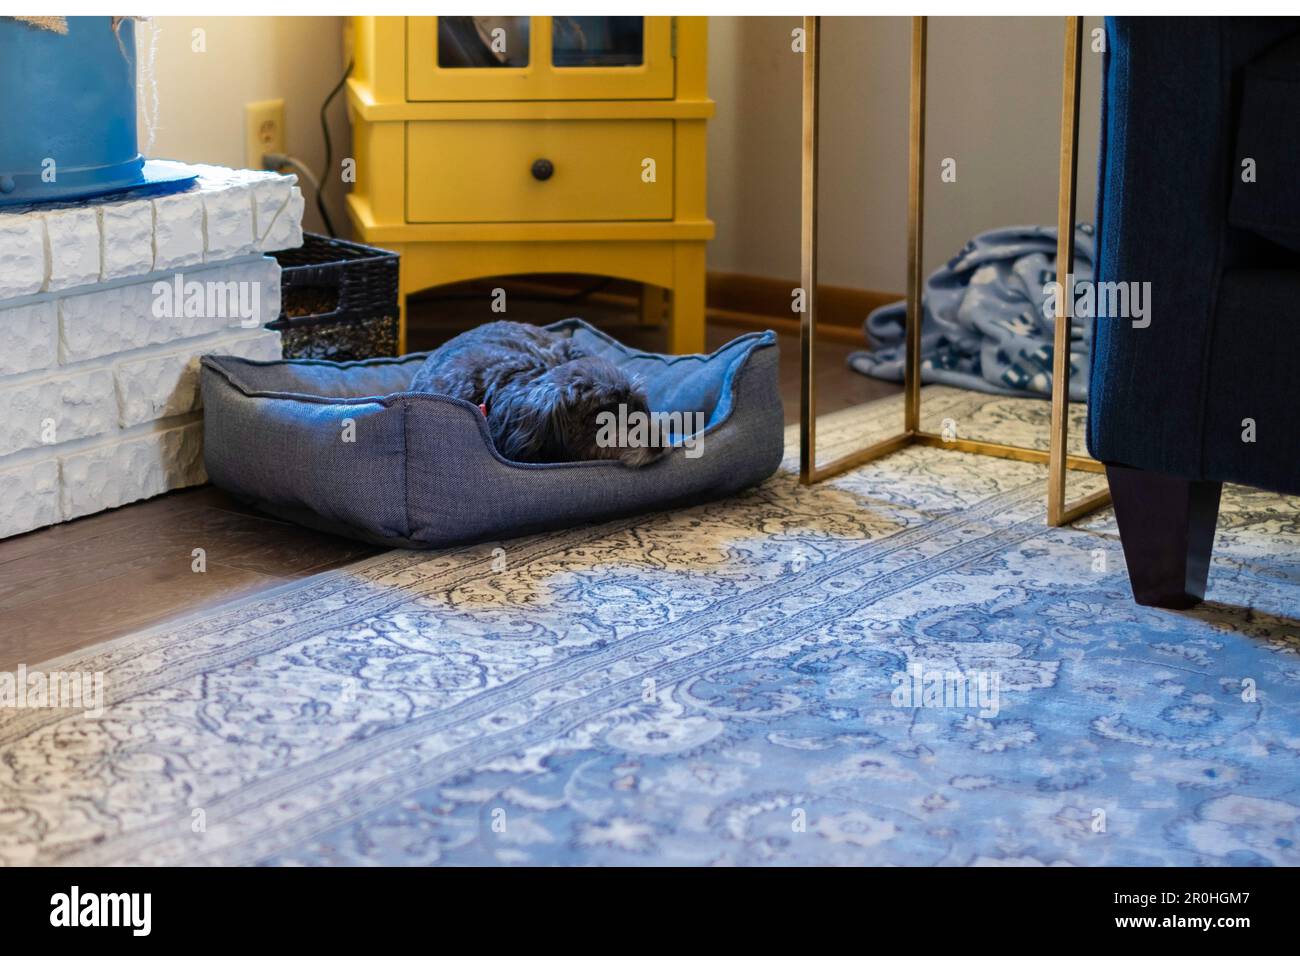 Un chien mixte de race coolée se trouve dans son lit d'animal de compagnie et repose dans le salon d'une maison, USA. Banque D'Images